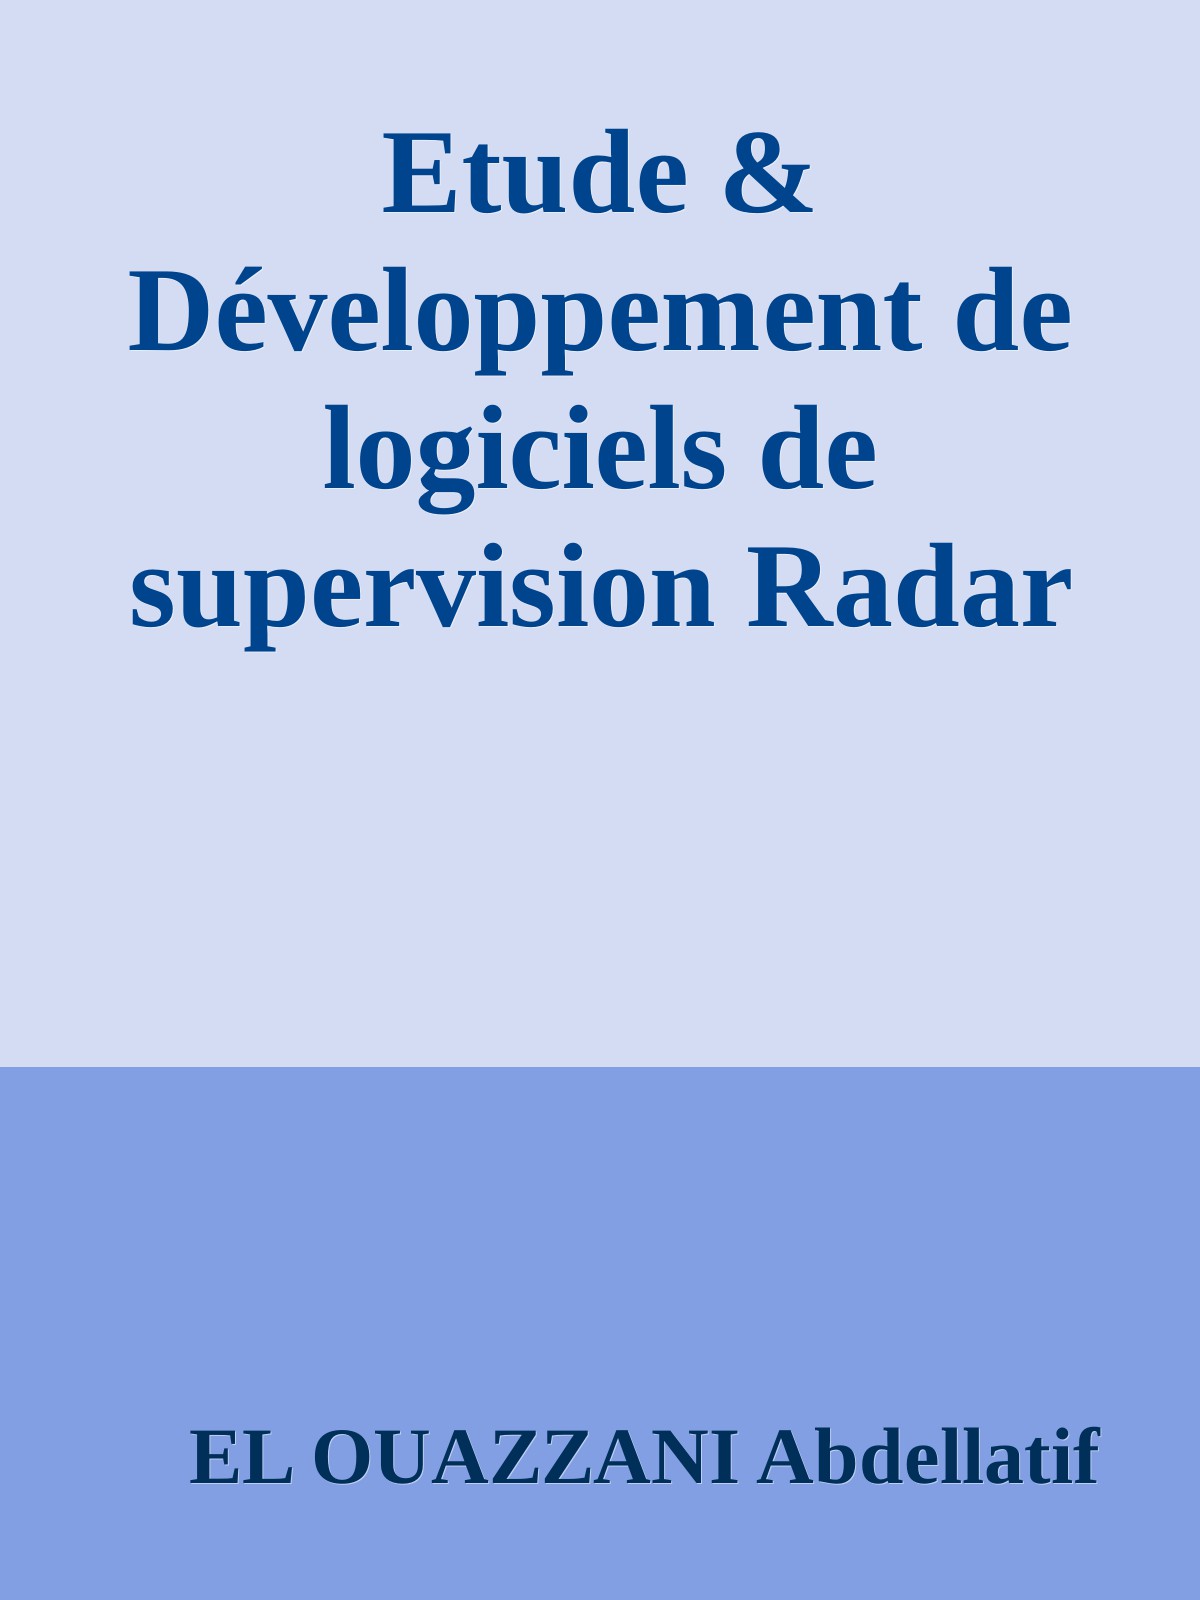 Etude & Développement de logiciels de supervision Radar sur Linux pour la nouvelle génération de DSP développé par Texas Instrument